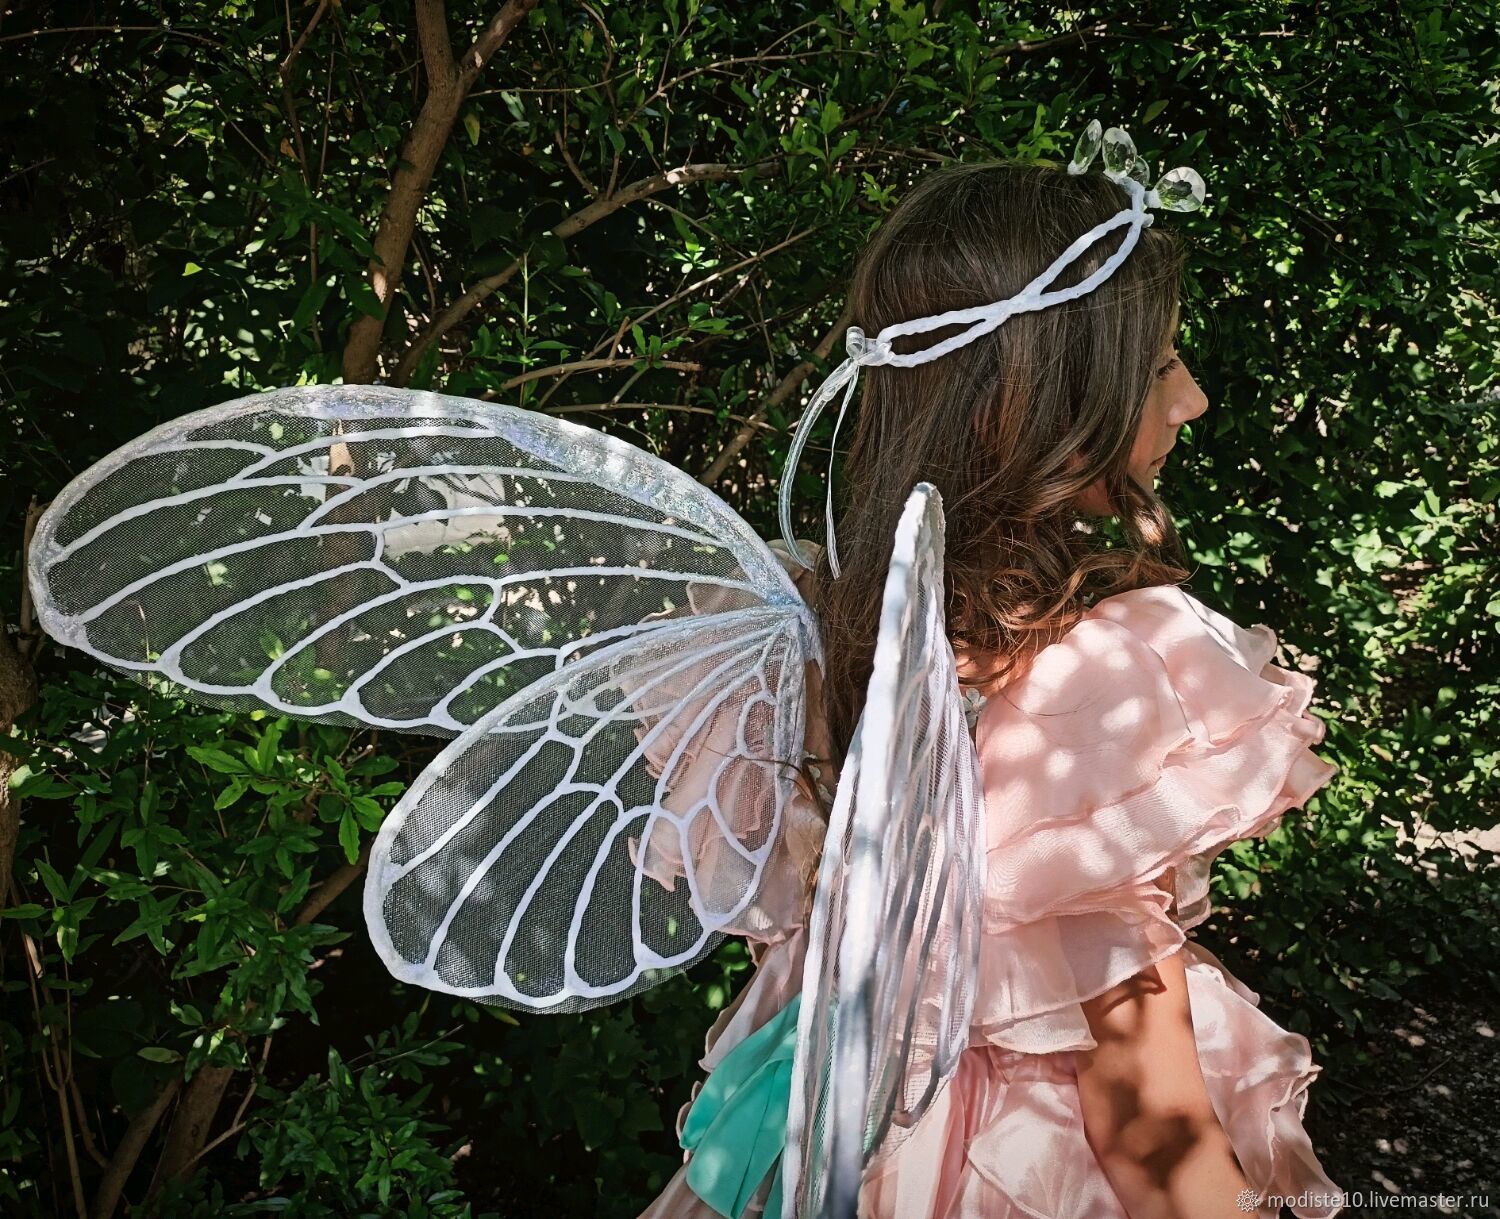 Крылья феи бабочки свет в темноте купить в Казани - интернет магазин Rich Family